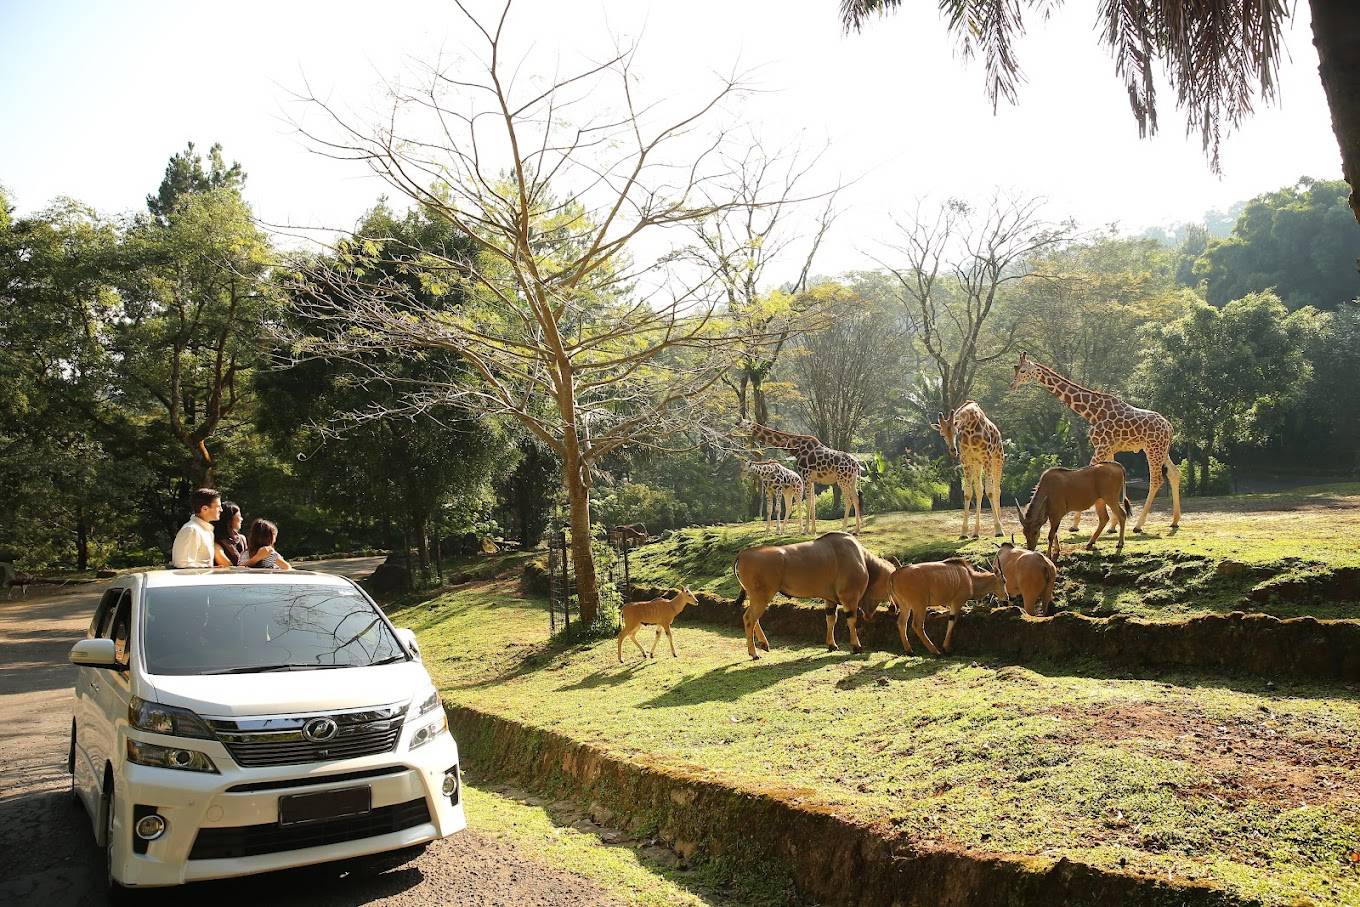 Taman safari bogor destinations